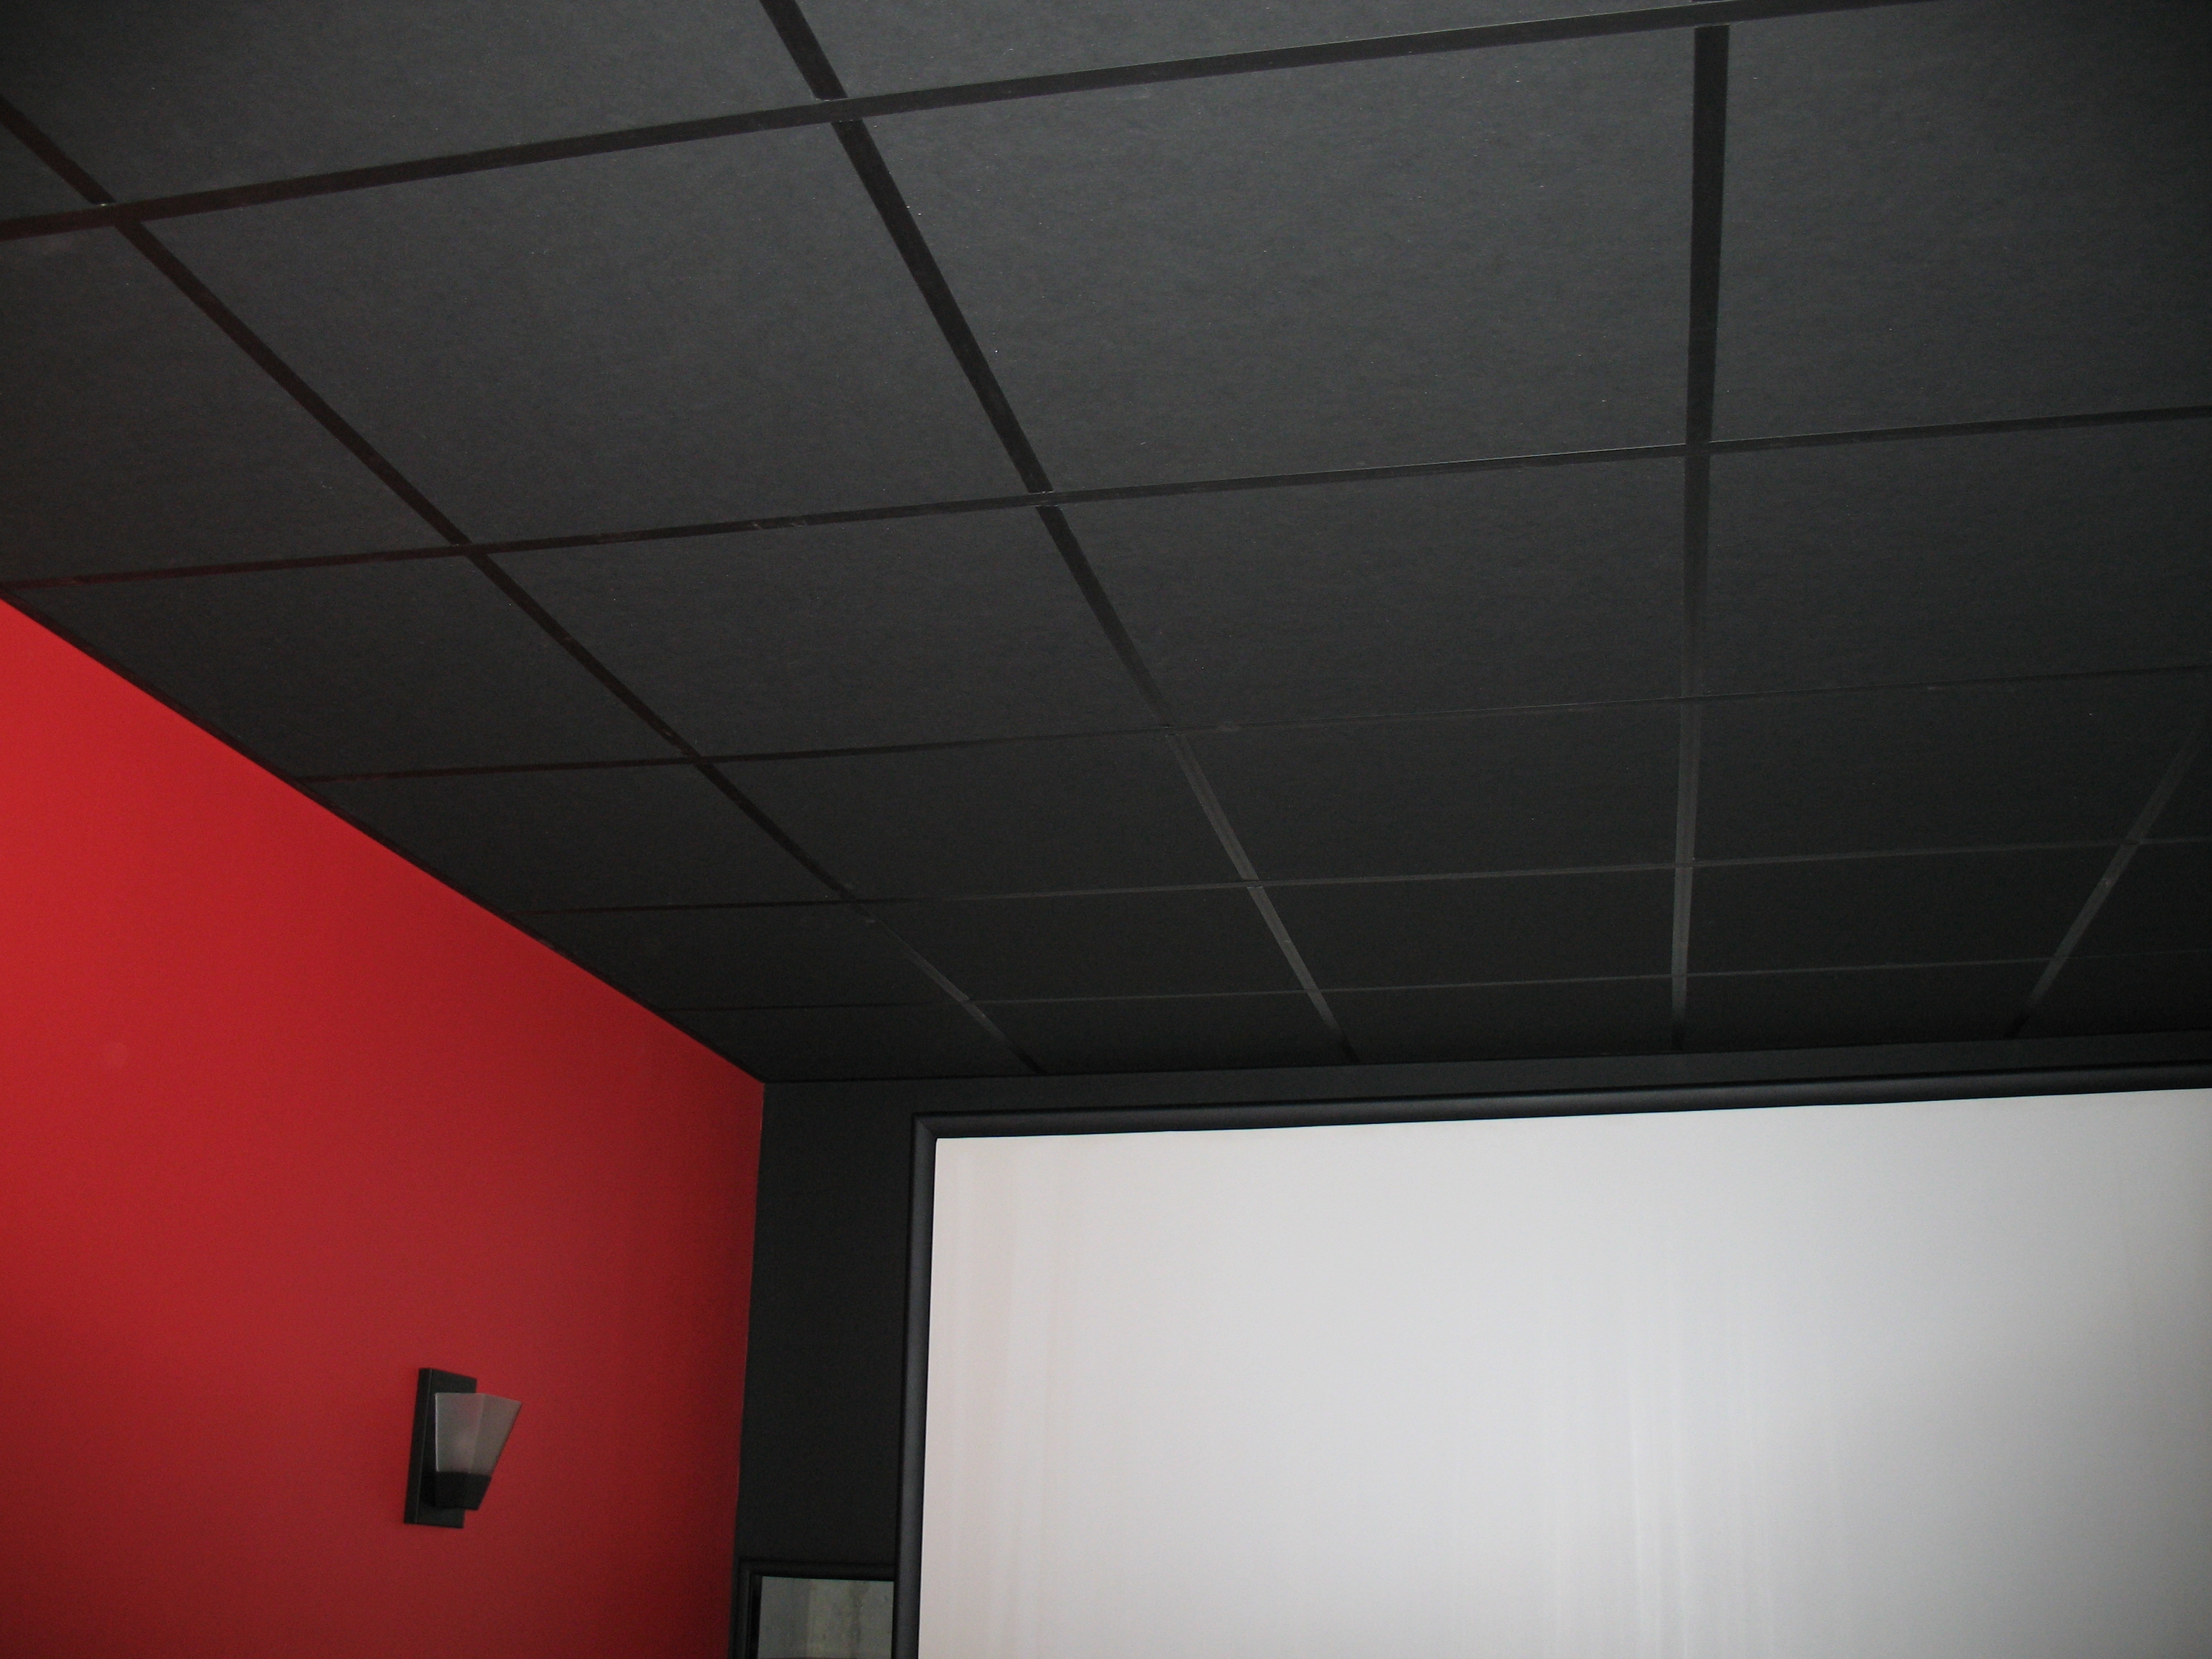 Black Ceiling Tiles For Restaurant Black Ceiling Tiles For Restaurant black ceiling tiles home tiles 3072 X 2304